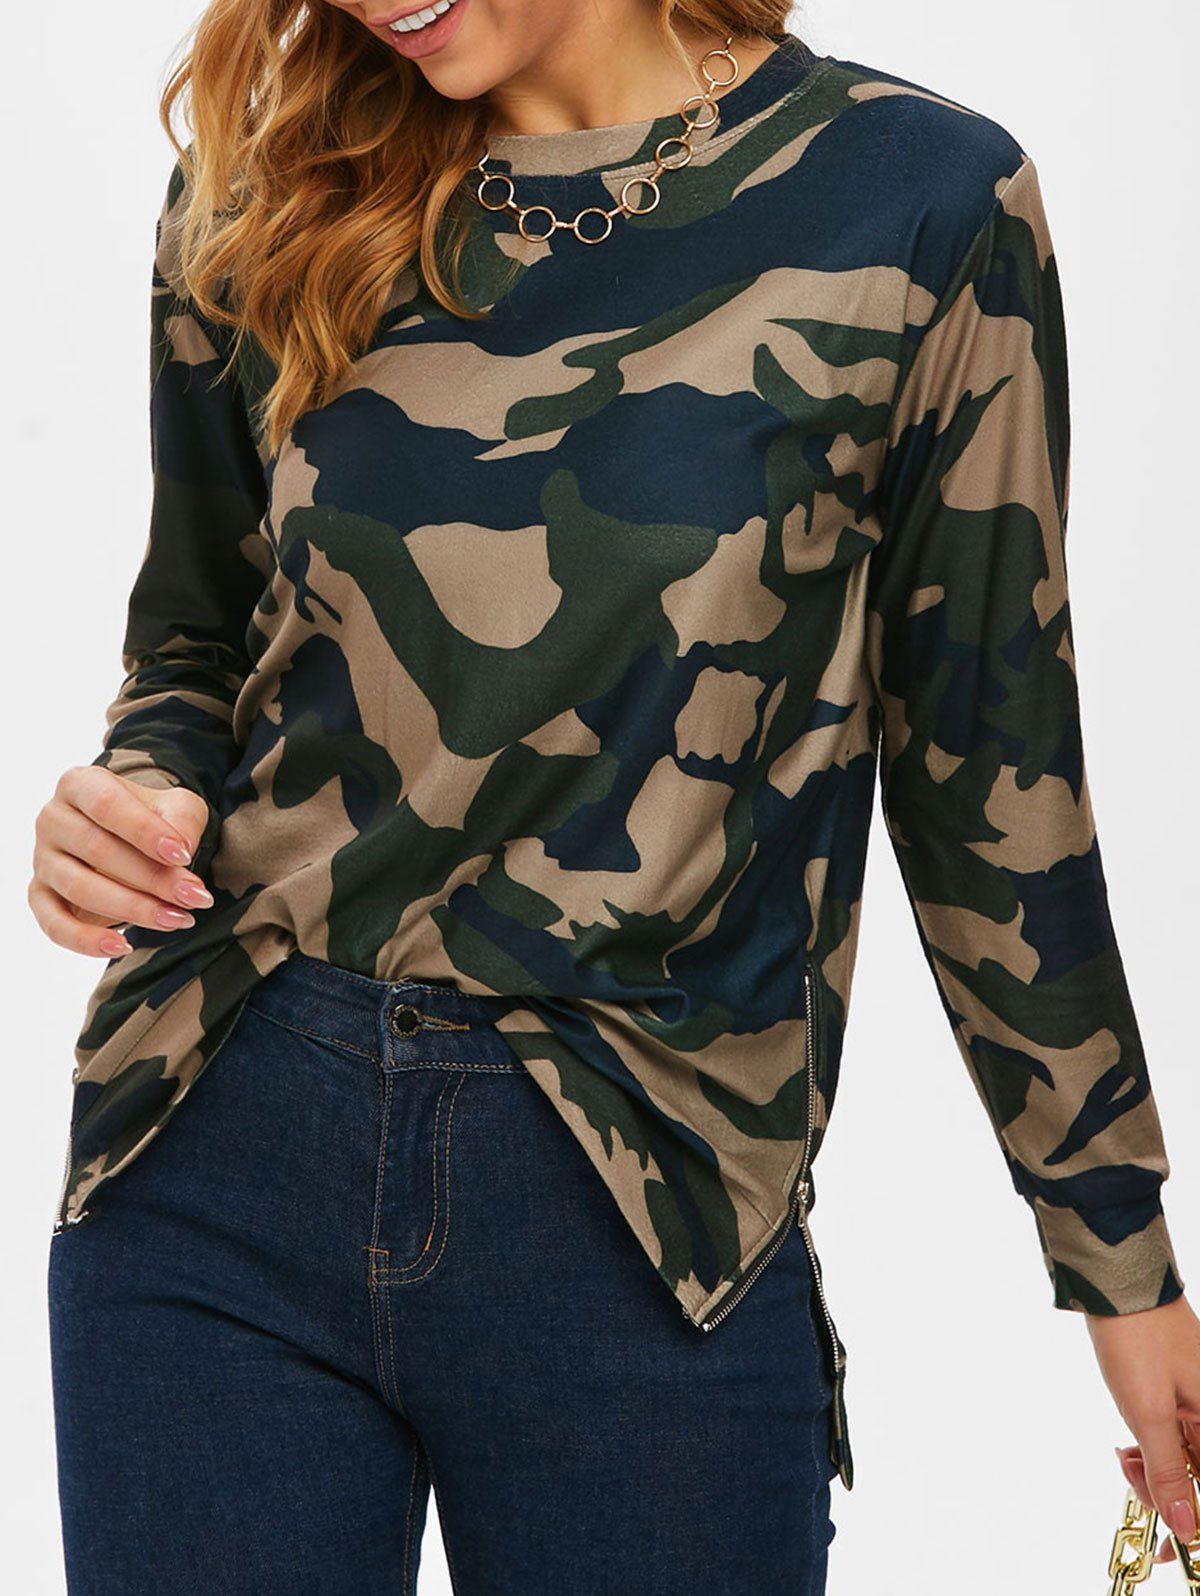 Fleece Camo Side Zip Long Tunic Sweatshirt - multicolor S